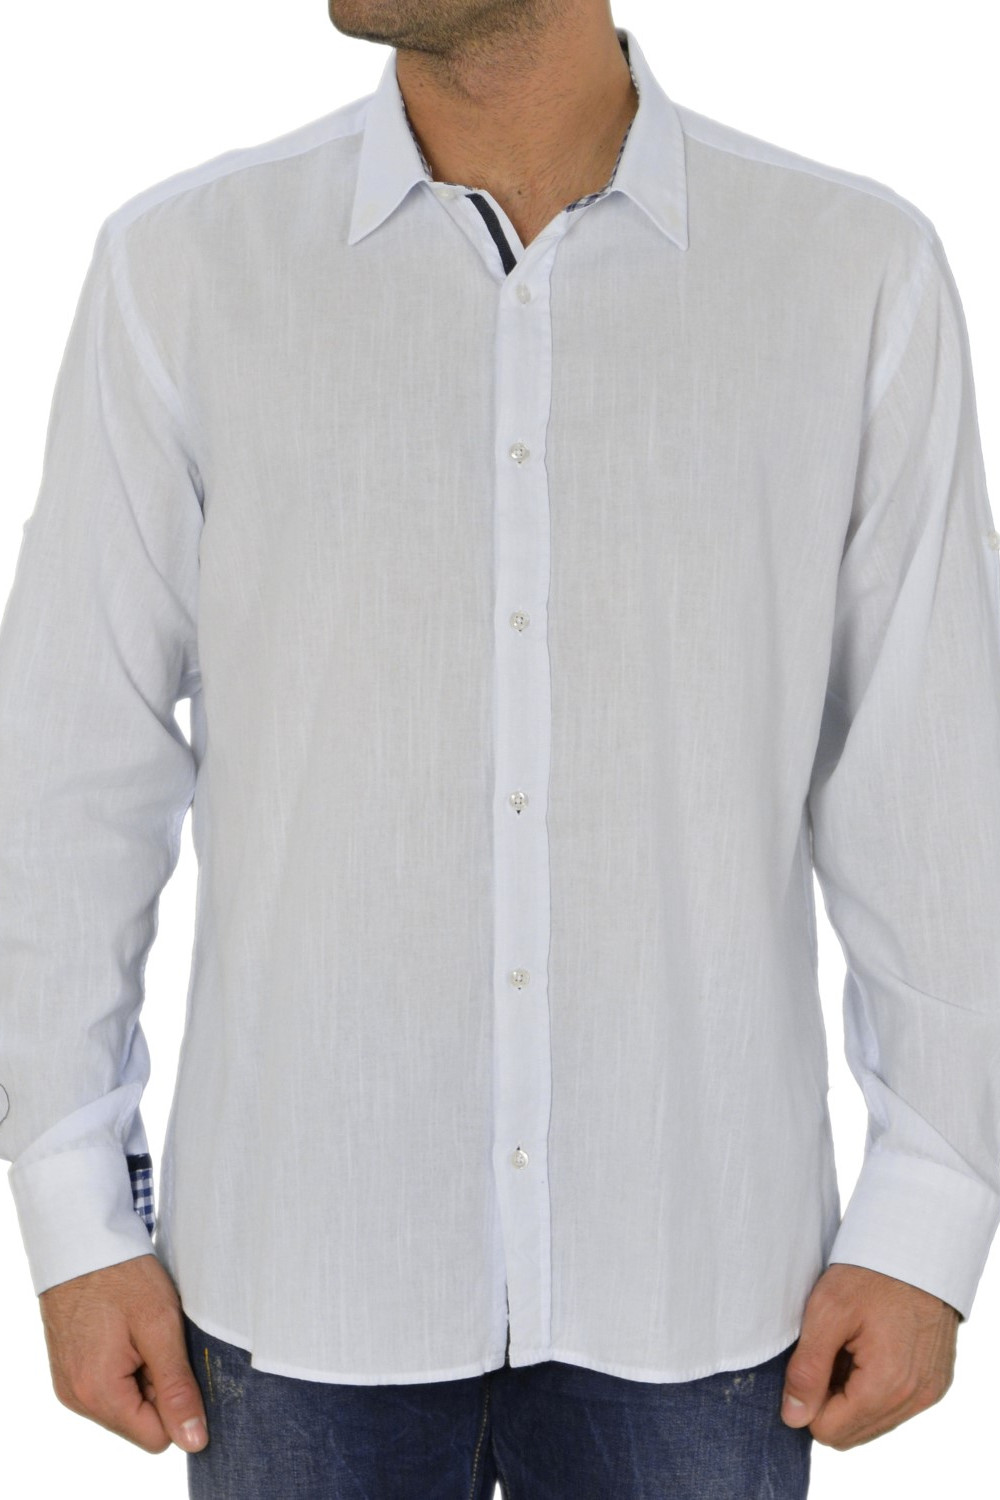 Ανδρικό πουκάμισο Λευκό Βαμβακολινό 89456